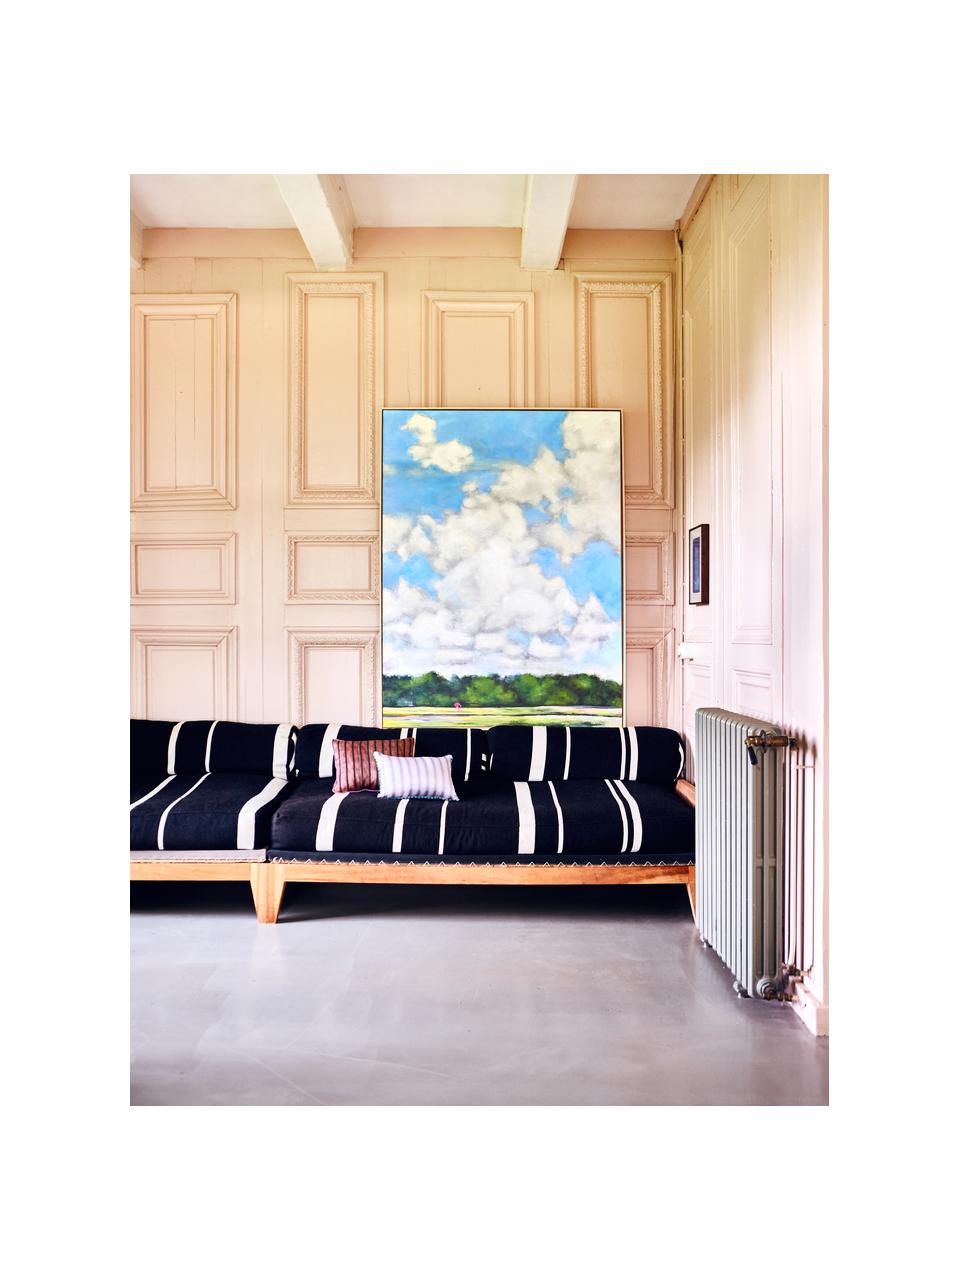 Ručně malovaný obrázek na plátně Dutch Sky, Více barev, Š 123 cm, V 163 cm